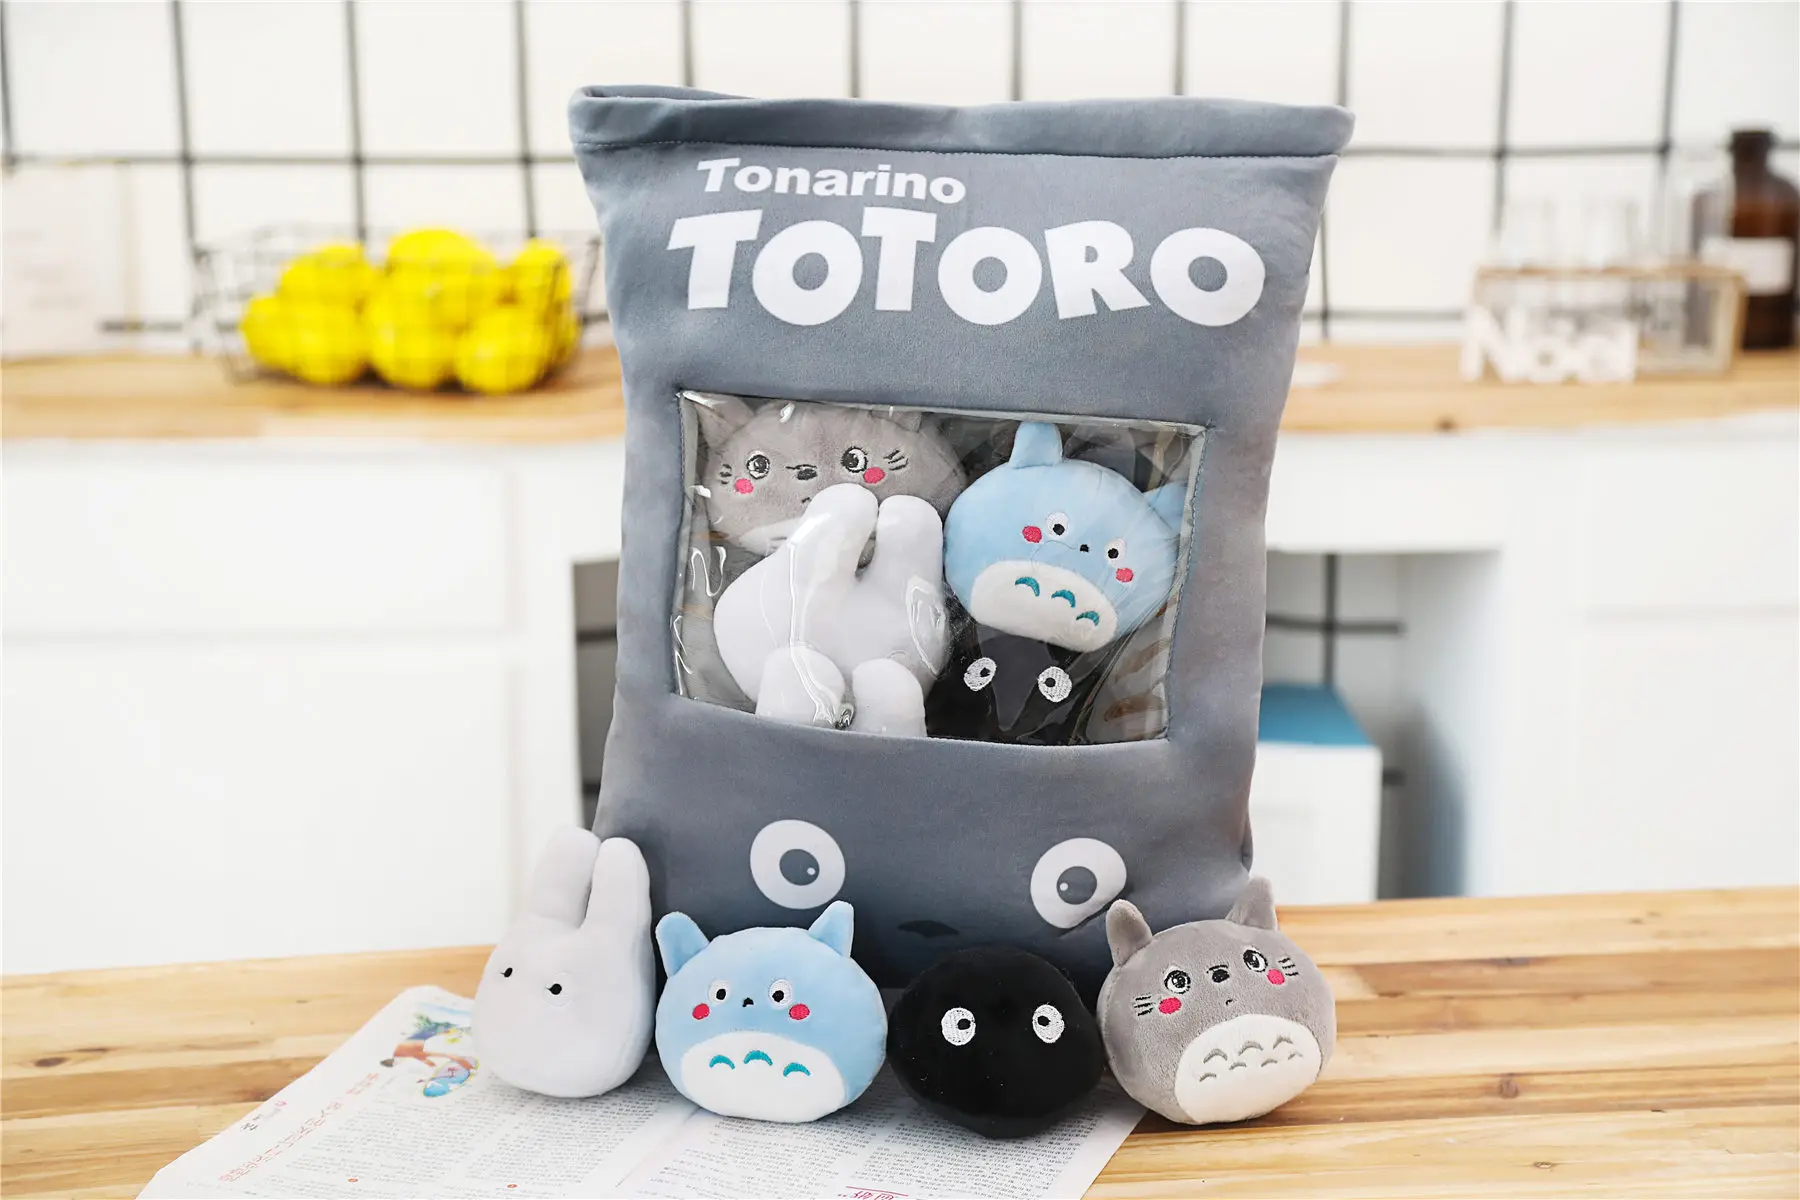 

50 см 8 шт./лот 4 вида конструкций креативные плюшевые игрушки Totoro закуска Подушка куклы Мягкие Kawaii My Neighbor Totoro игрушки волшебные плюшевые игру...